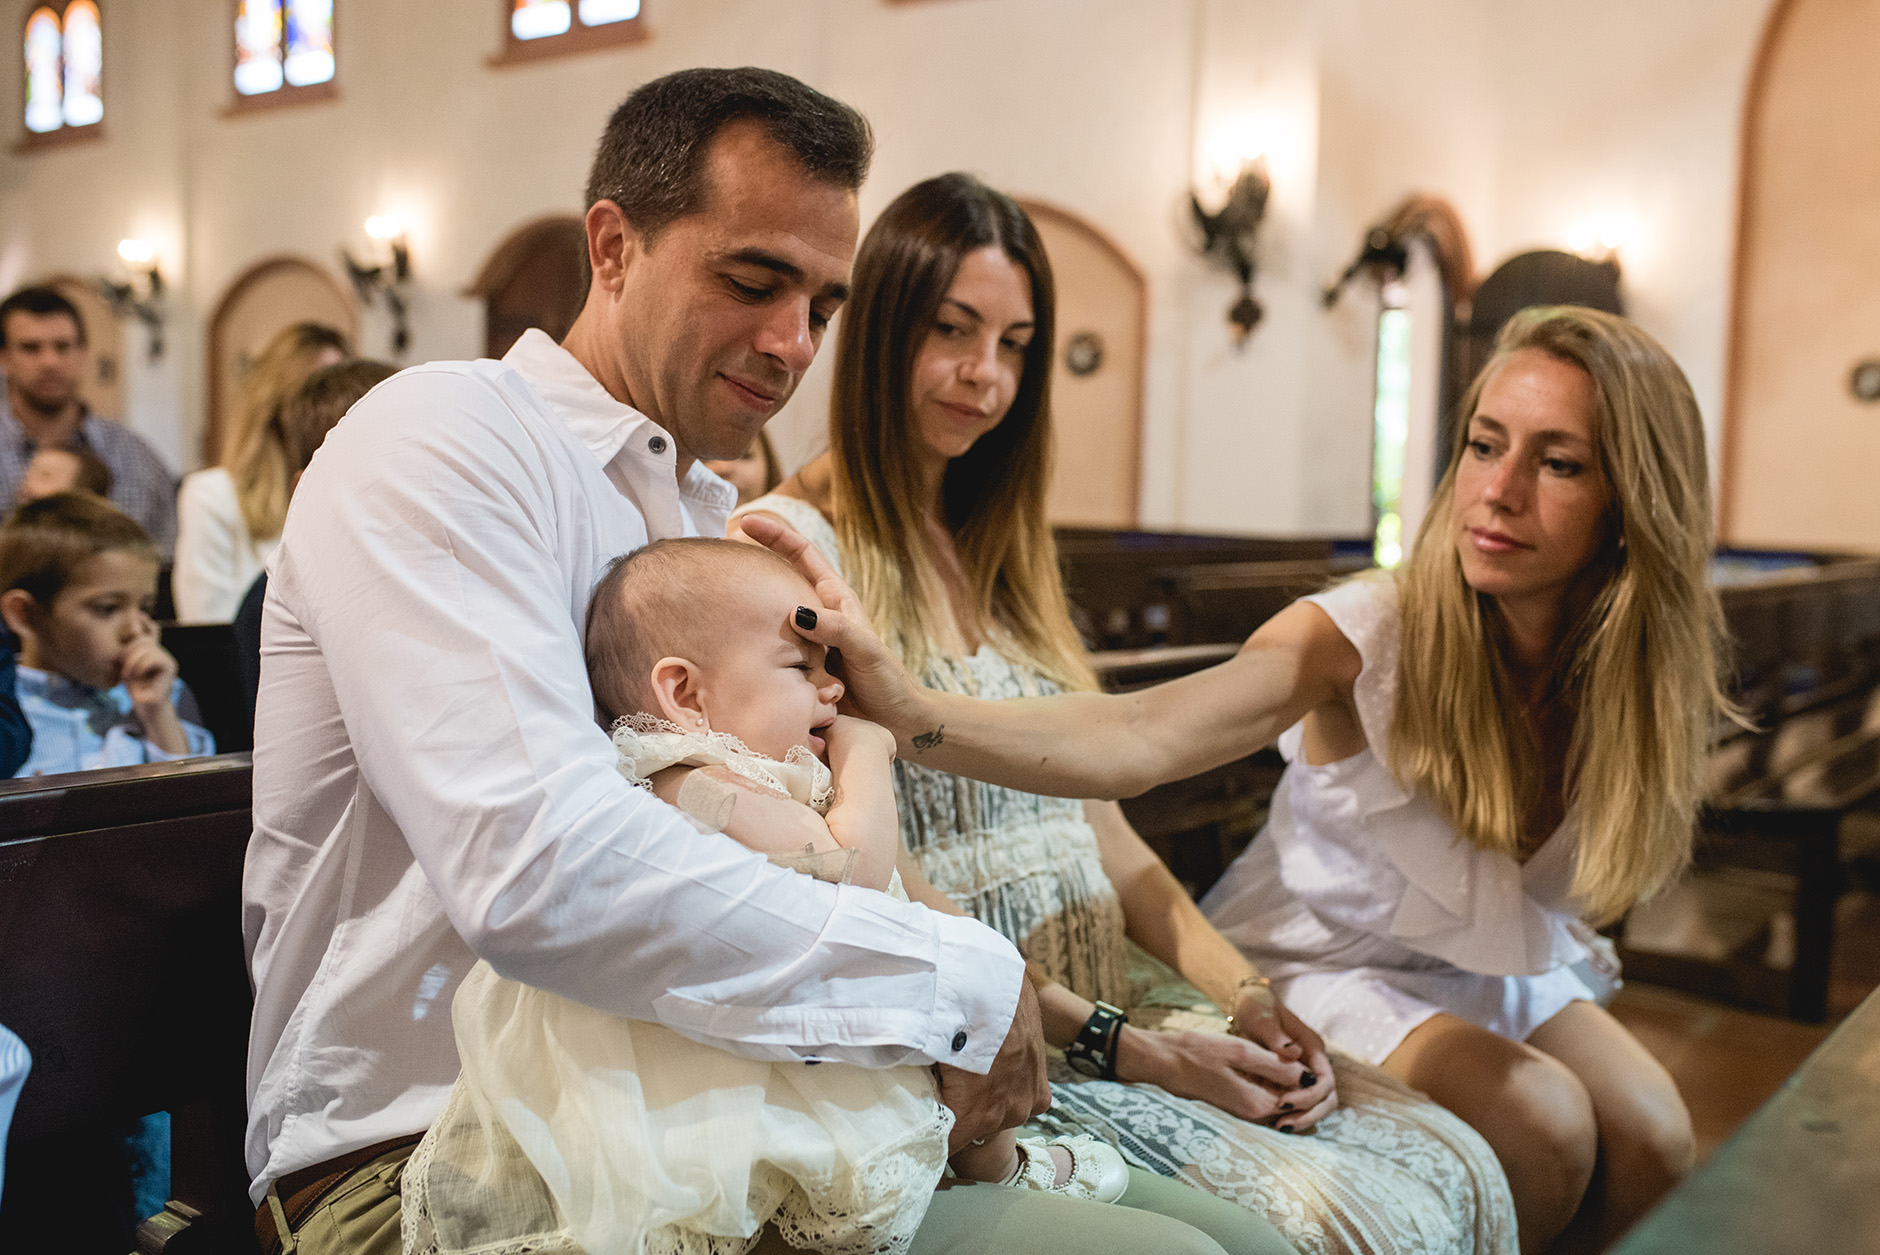 Fotos del bautismo de Lisa en Rosario realizadas por Bucle Fotografías Flor Bosio y Caro Clerici